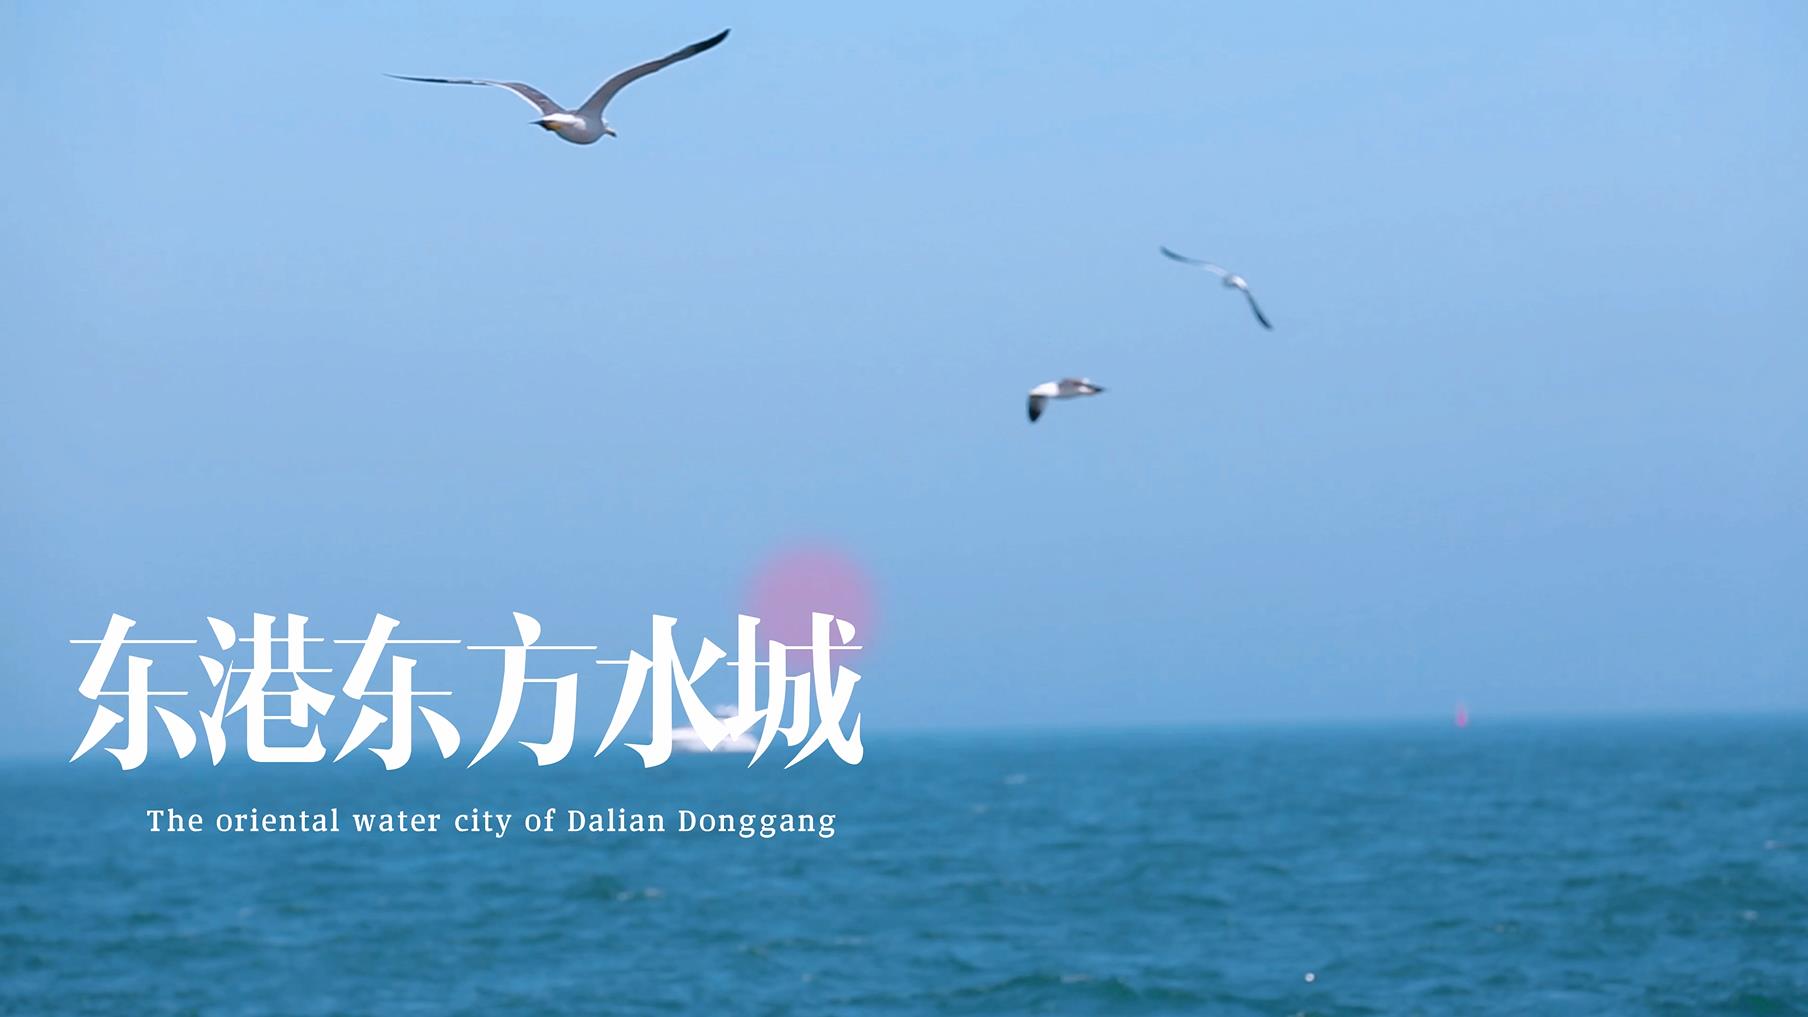 Wandering in Dalian | The Oriental Water City of Dalian Donggang